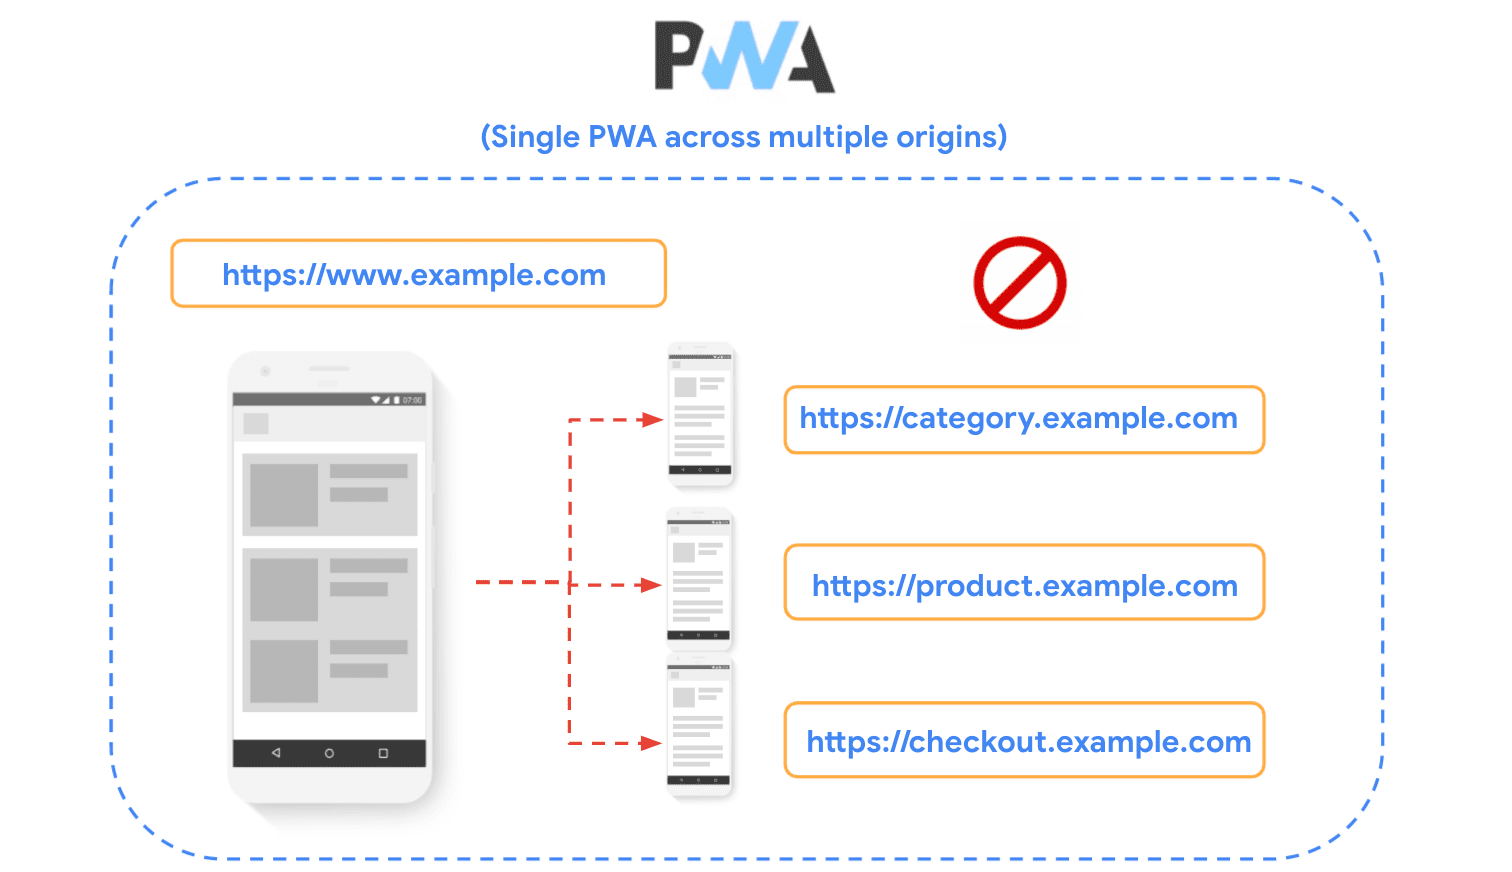 แผนภาพที่แสดงเว็บไซต์ในต้นทางหลายแห่ง และแสดงให้เห็นว่าการสร้าง PWA ไม่แนะนำให้ใช้เทคนิคดังกล่าว